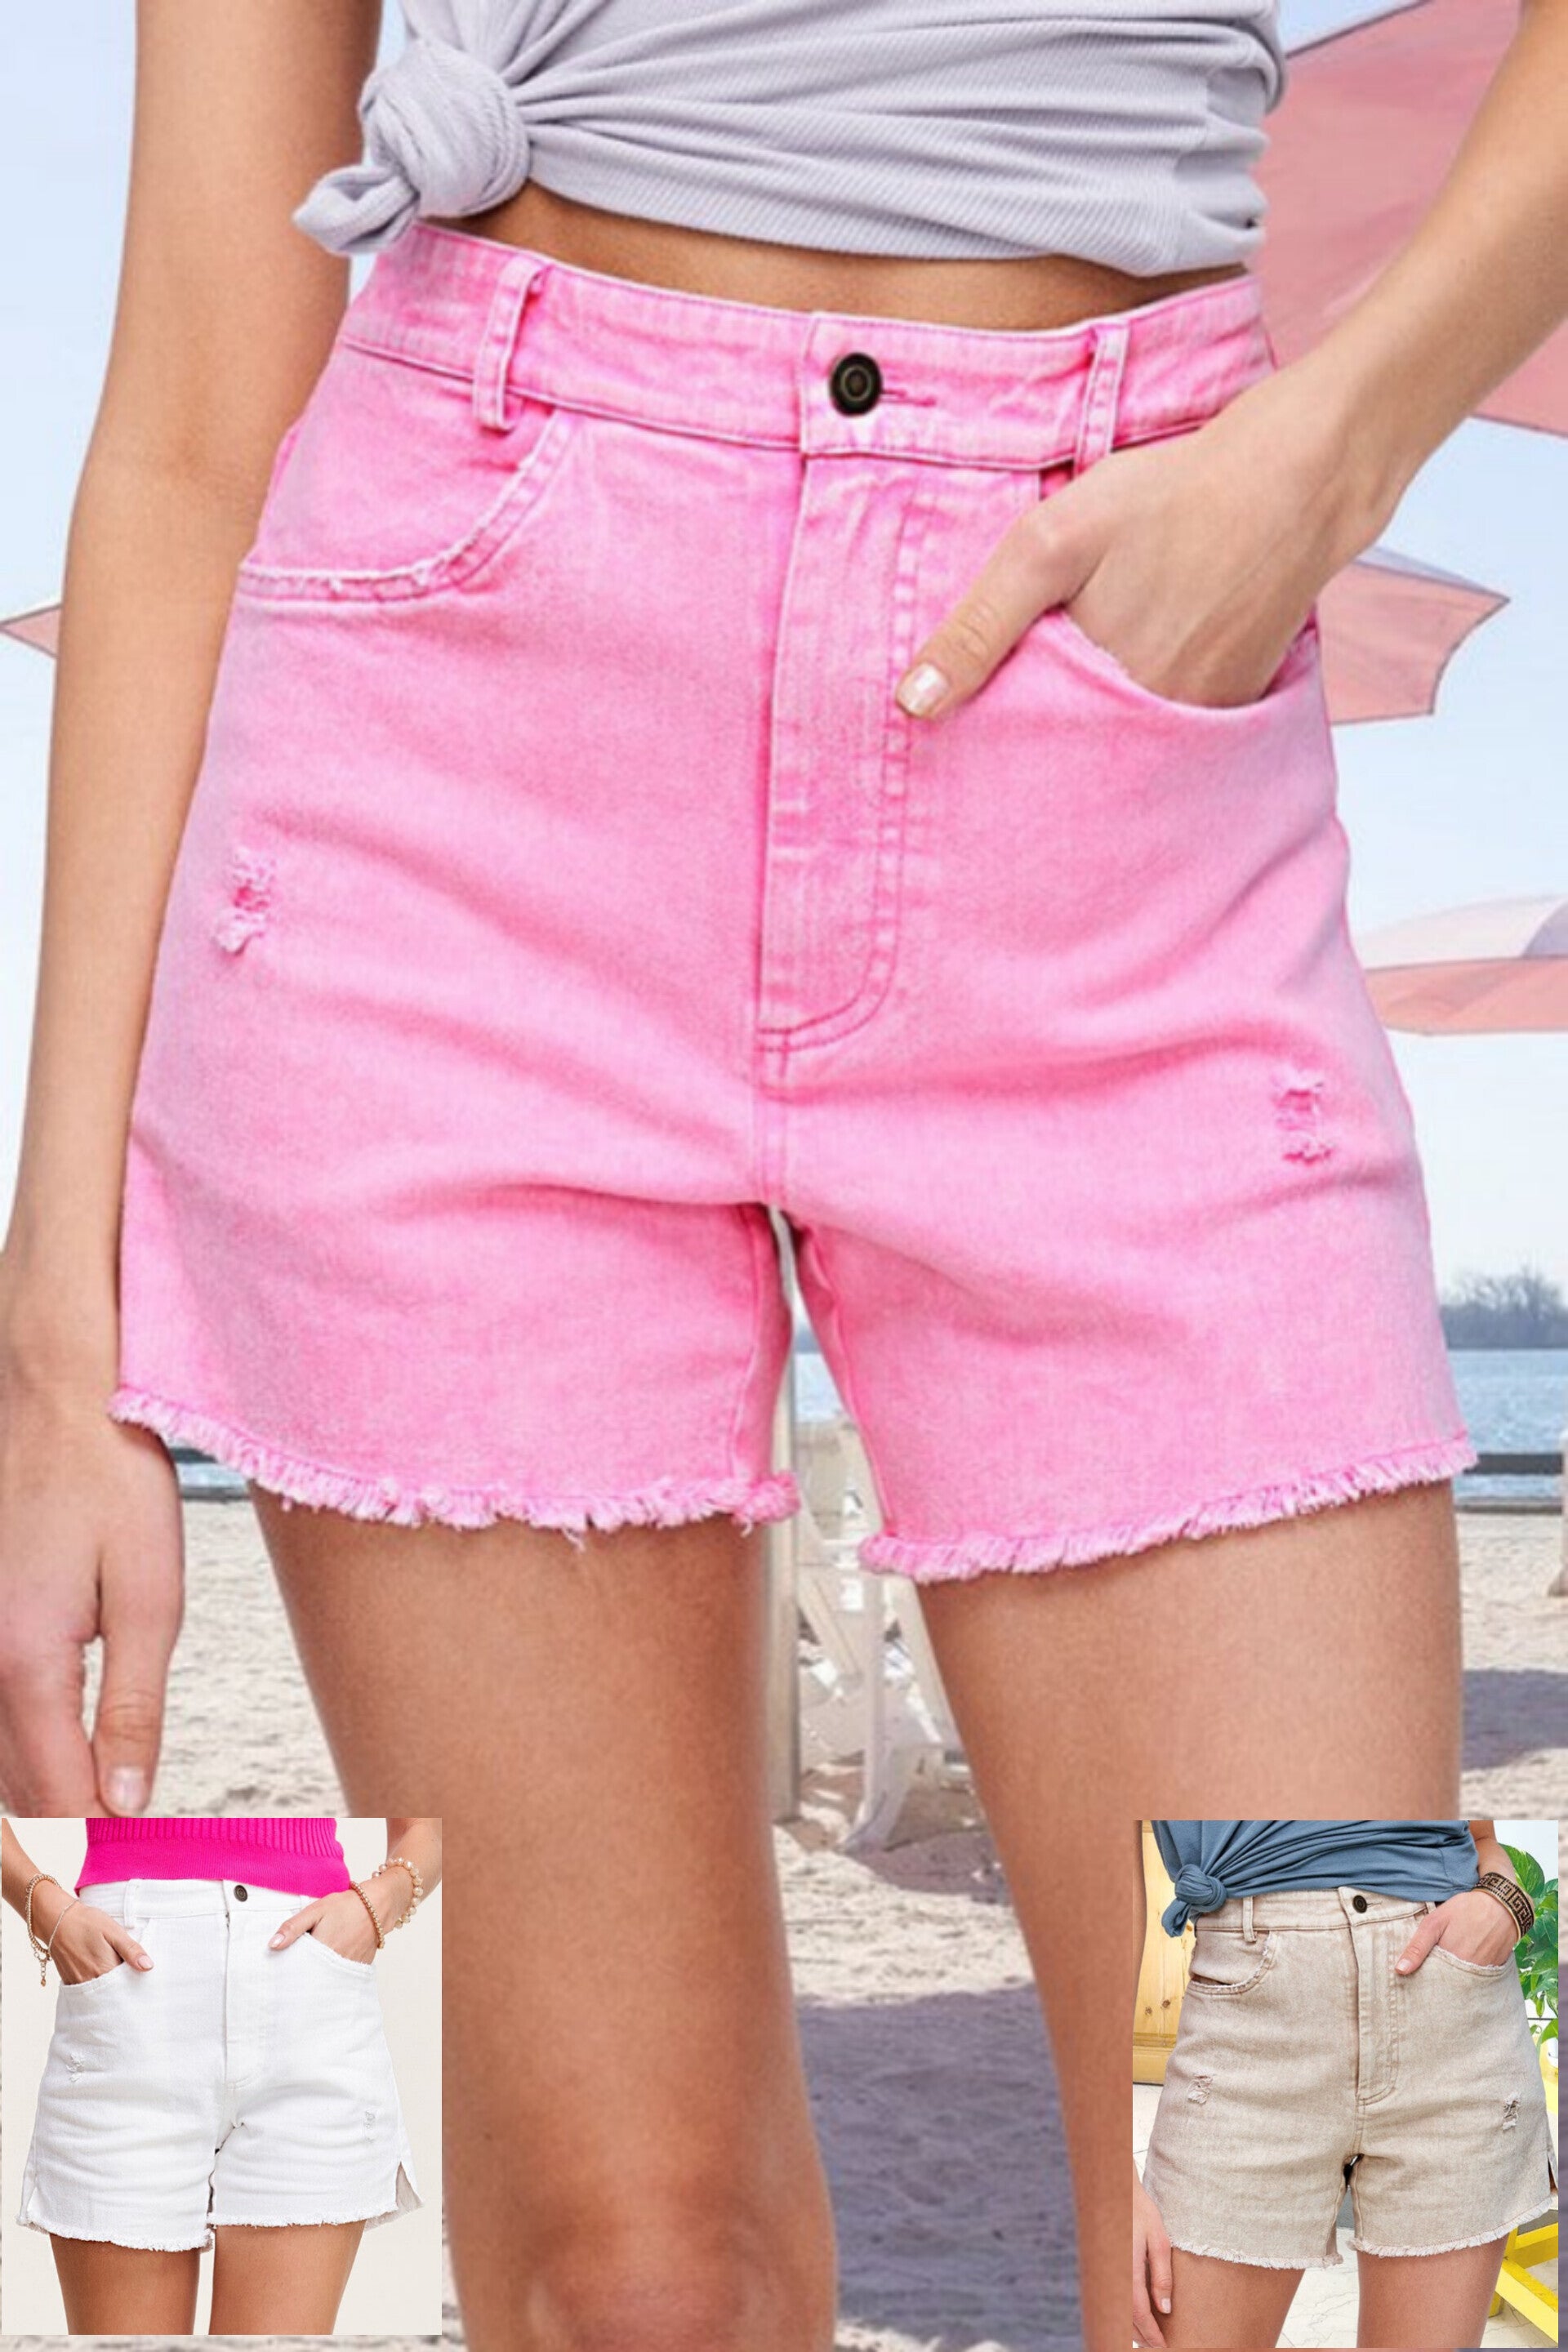 Summer Denim Shorts in Candy, White & Sand